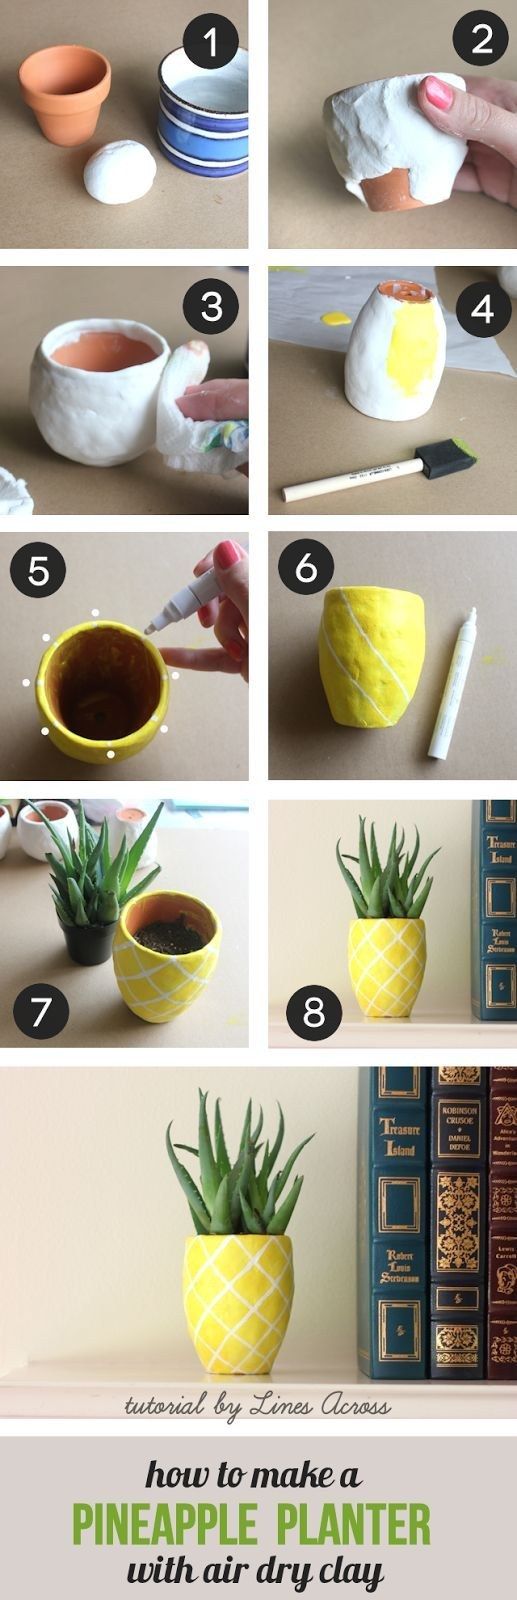 DIY cute juicy pineapple planters  